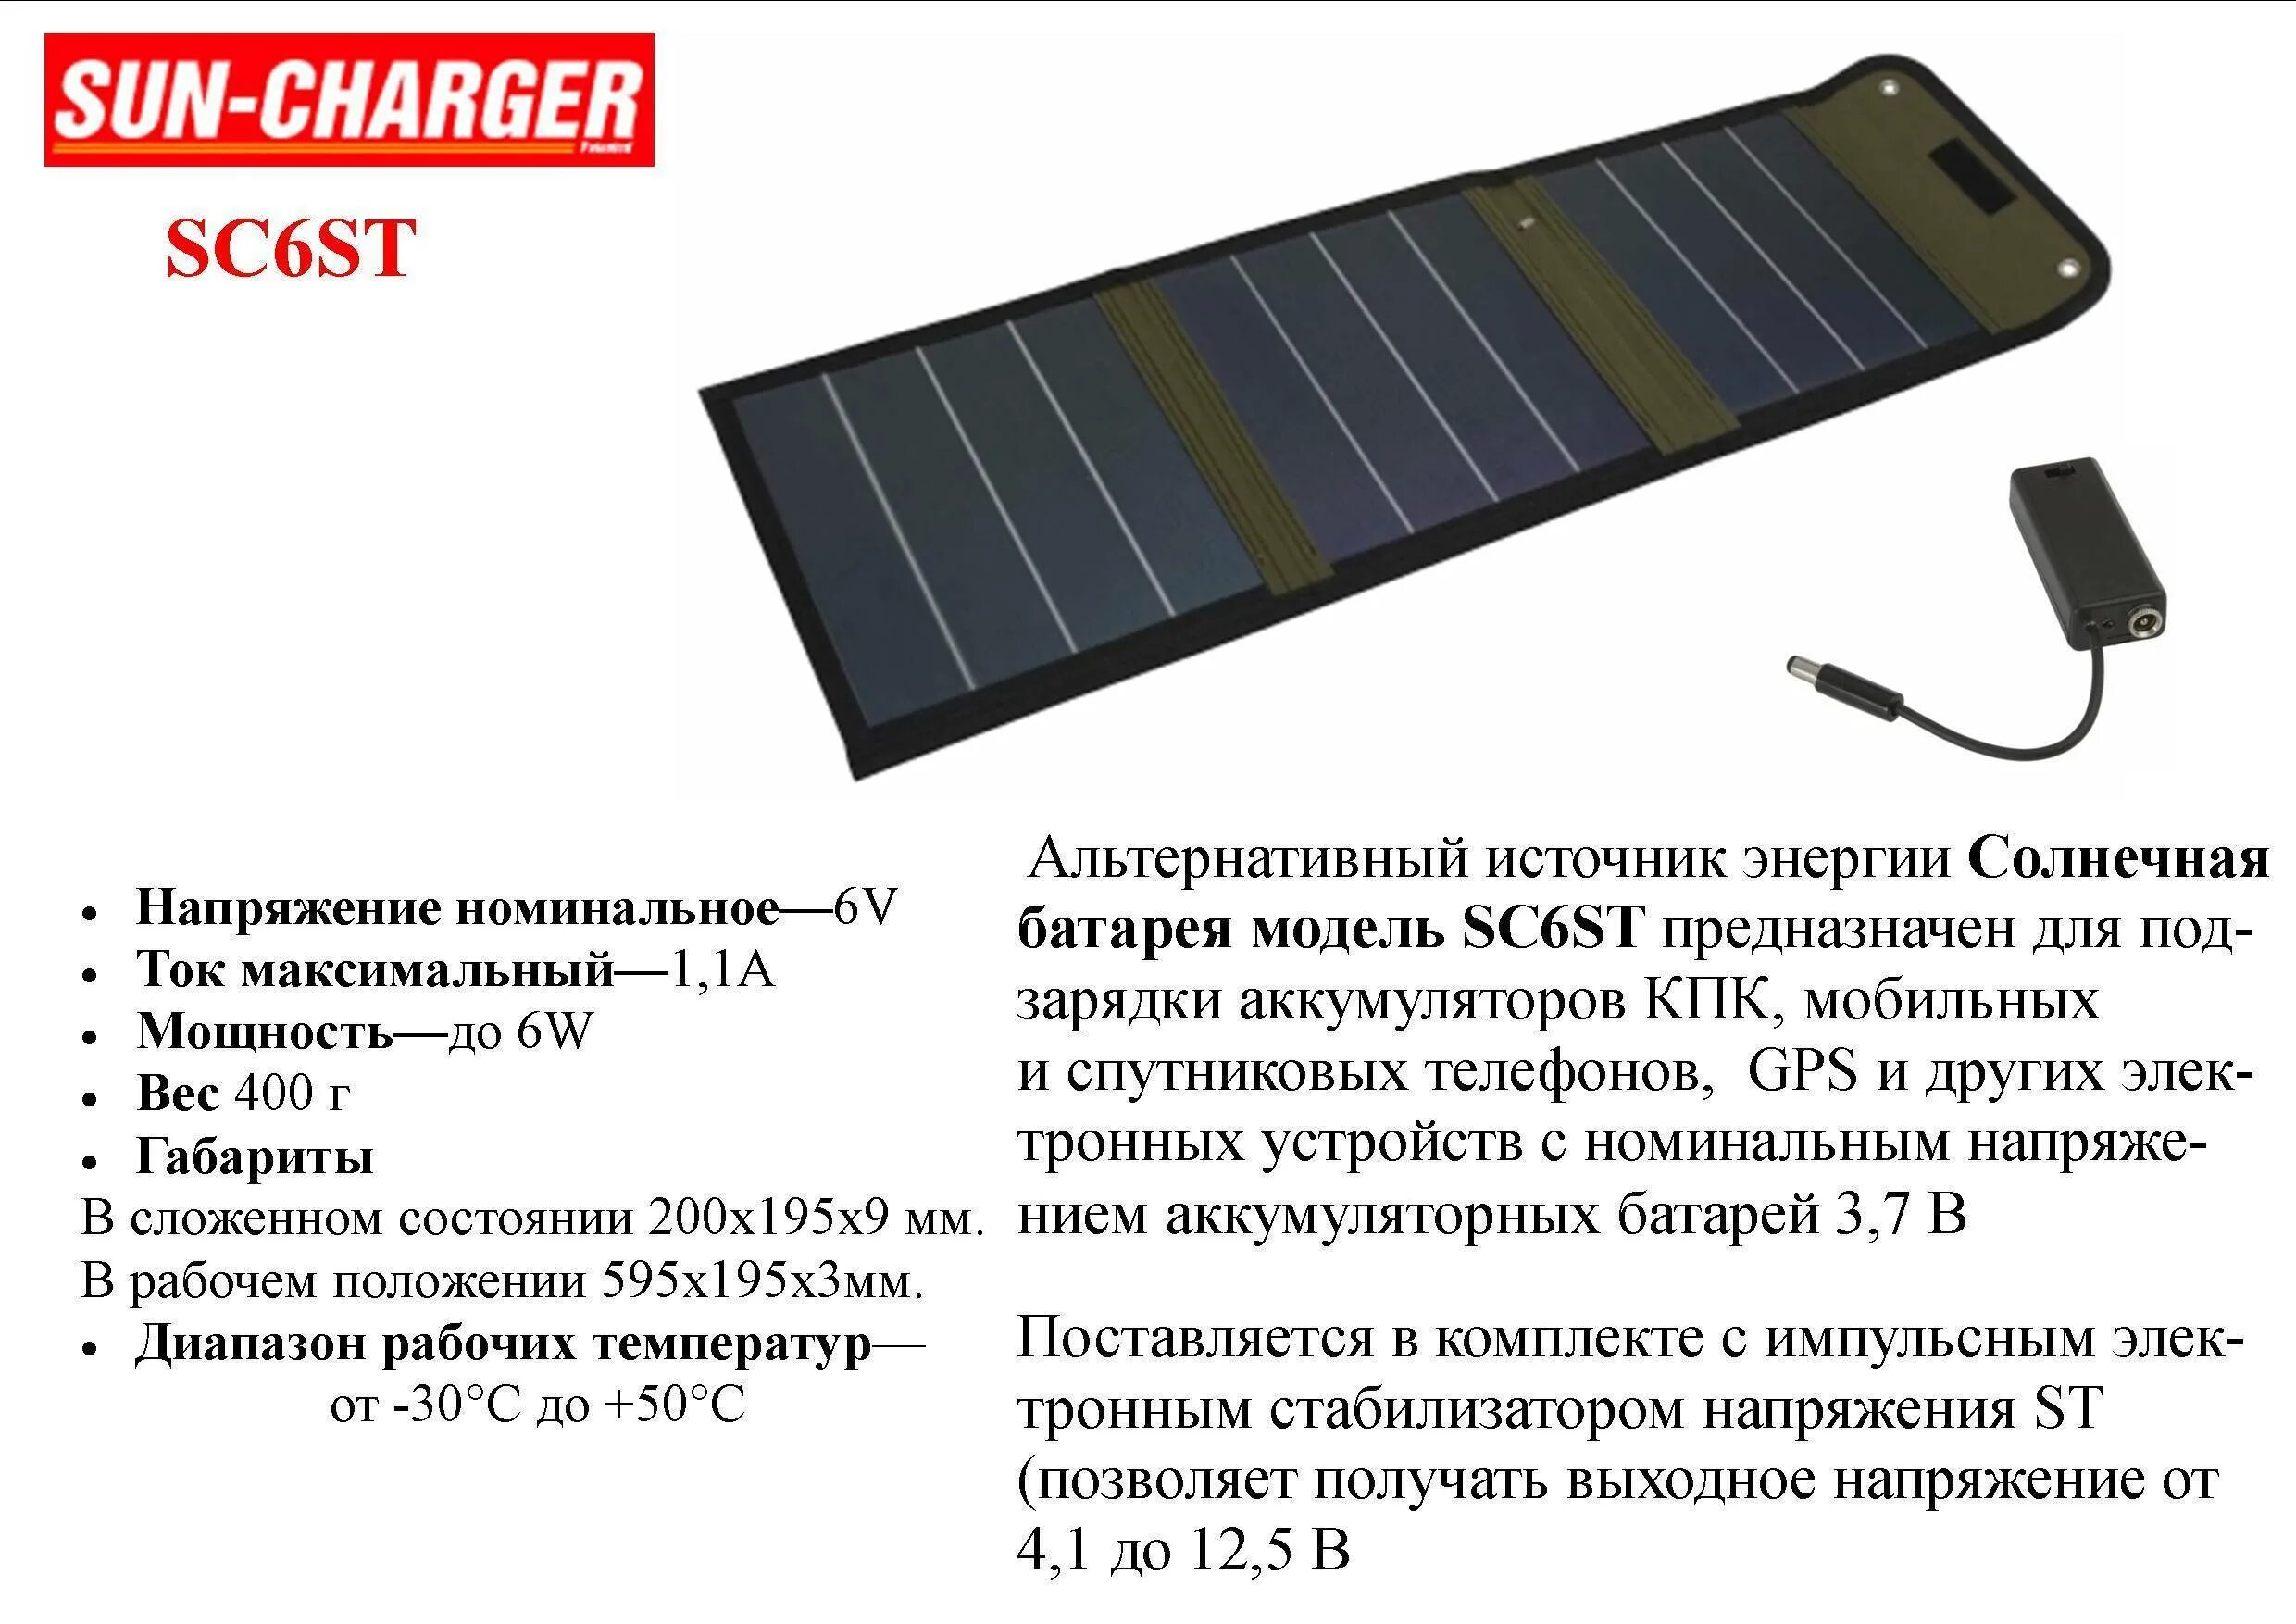 Сколько нужно солнечных батарей. Солнечные панели с концентраторами вид сбоку. Мощность солнечной батареи. Действующая Солнечная батарея. Характеристики солнечных панелей.